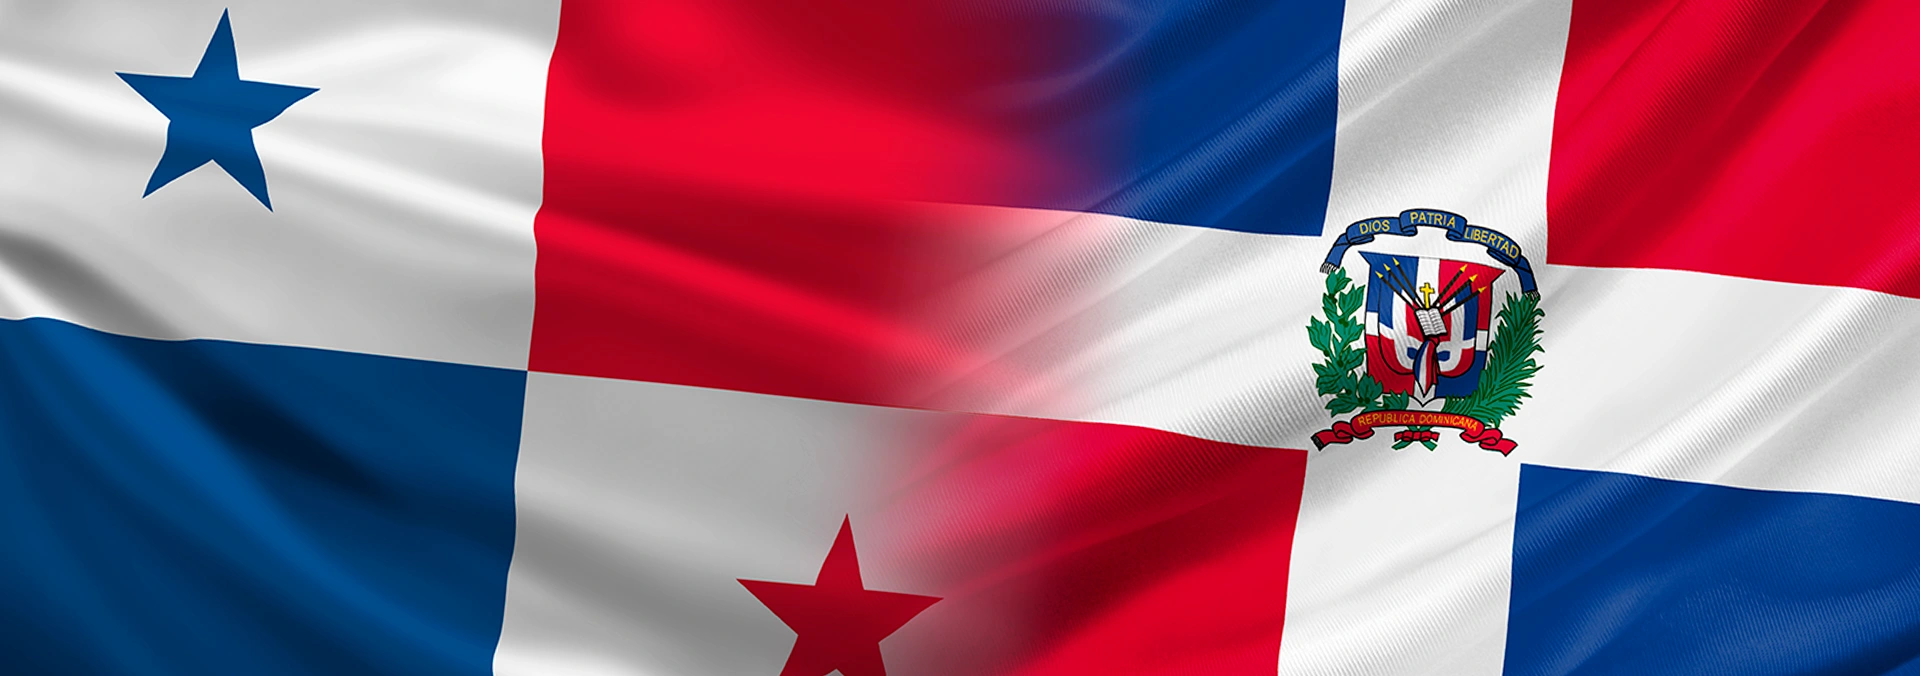 Nuproxa chega ao Panamá e República Dominicana